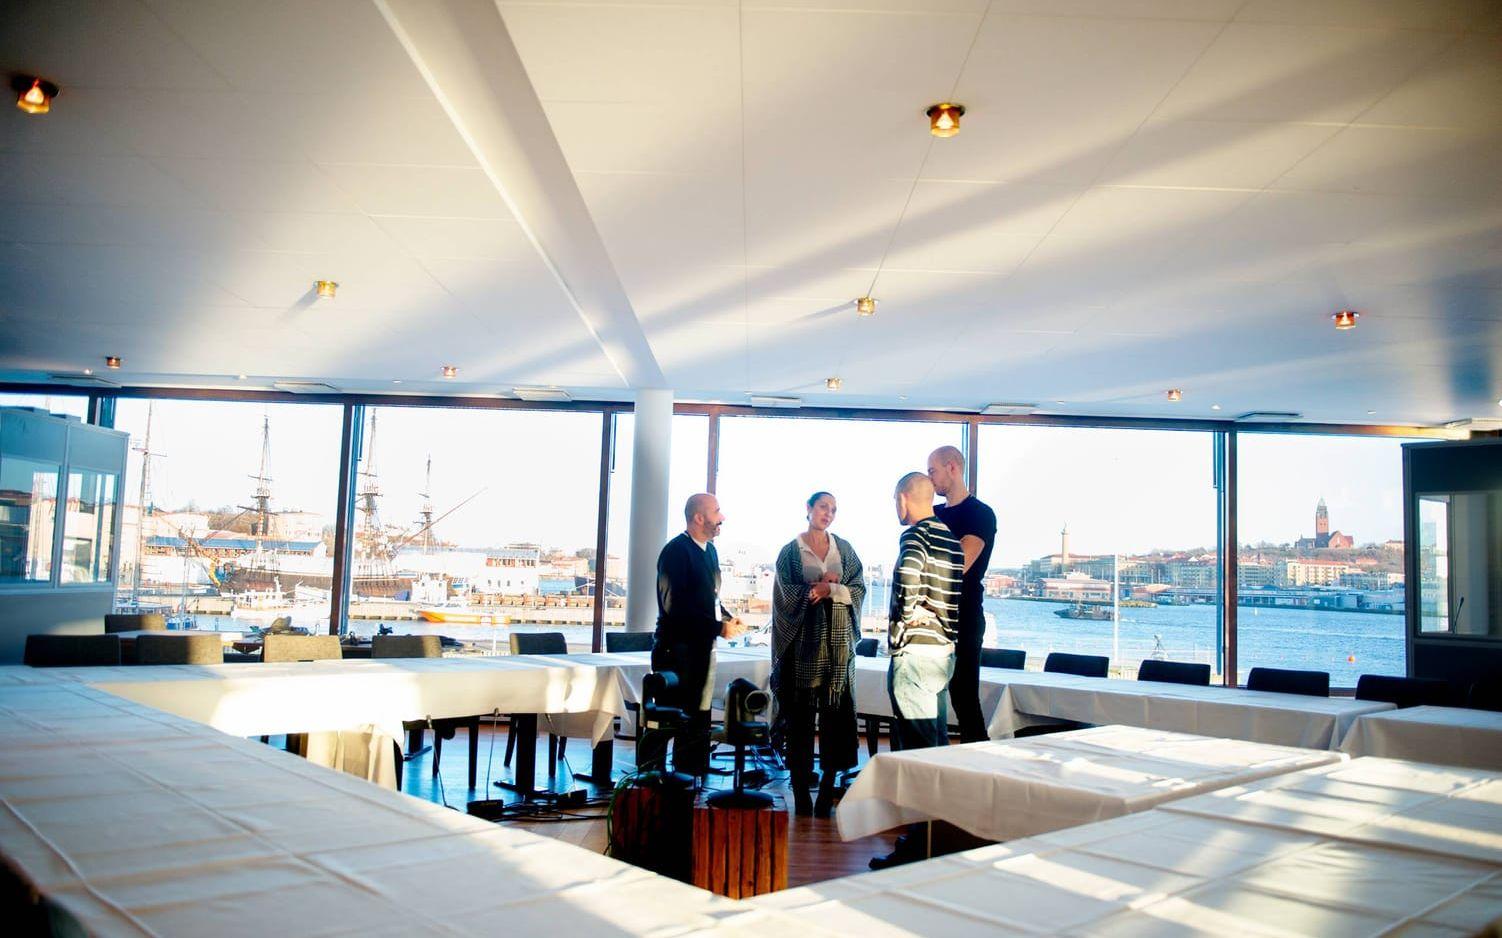 Bild: Anna Svanberg. Magnifik utsikt. EU:s regeringschefer kommer äta lunch med Göteborg framför sig. Dock skyms vyn delvis av tolkarnas bås, till höger i bild.